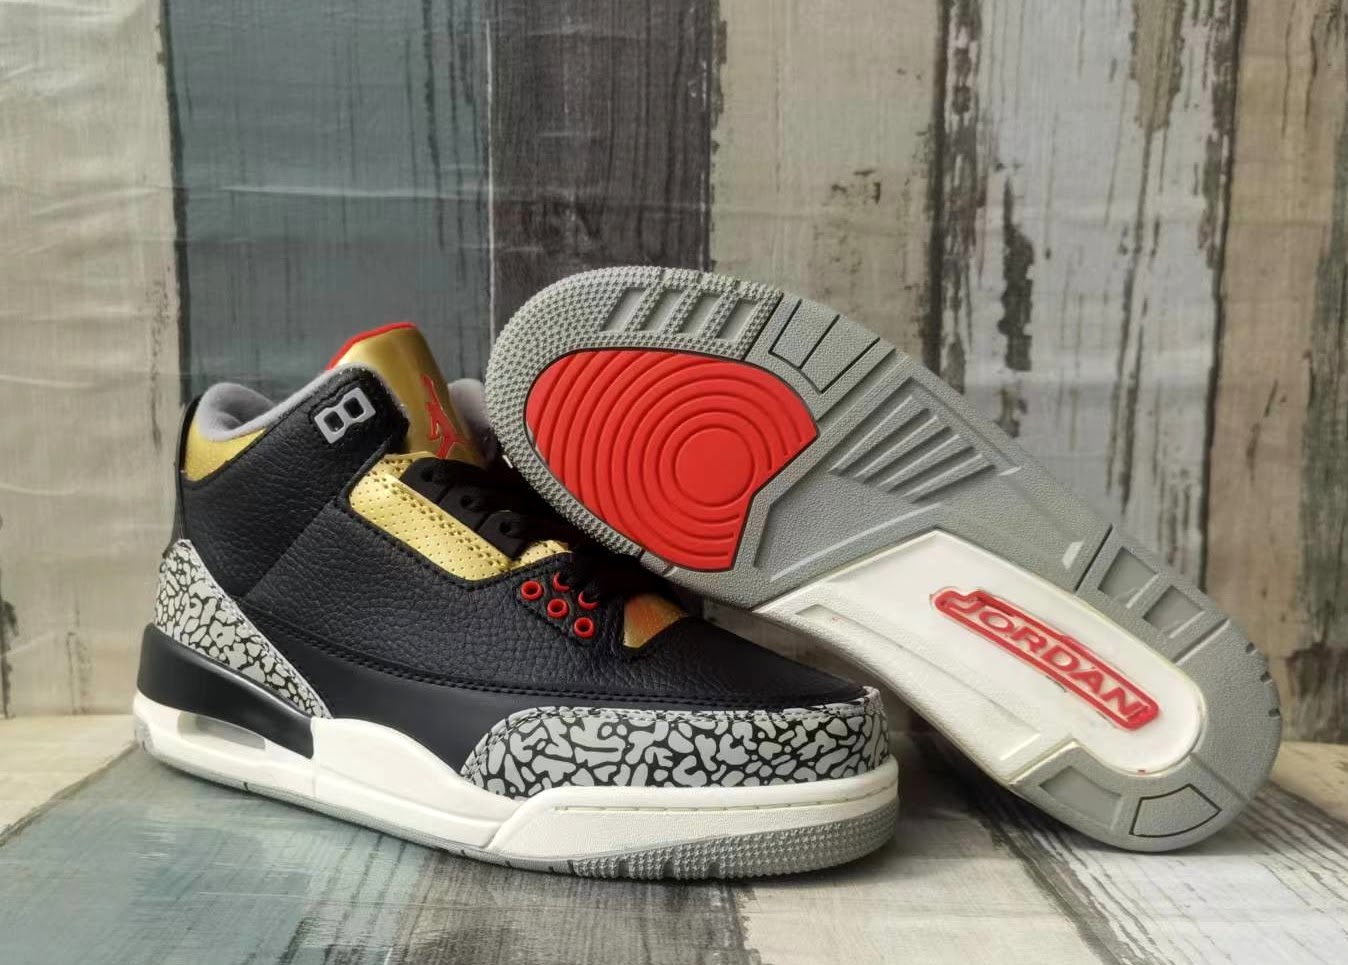 Air Jordan 3 Black Gold Make Over Sneaker For Men in 259101, cheap Jordan3, only $69!